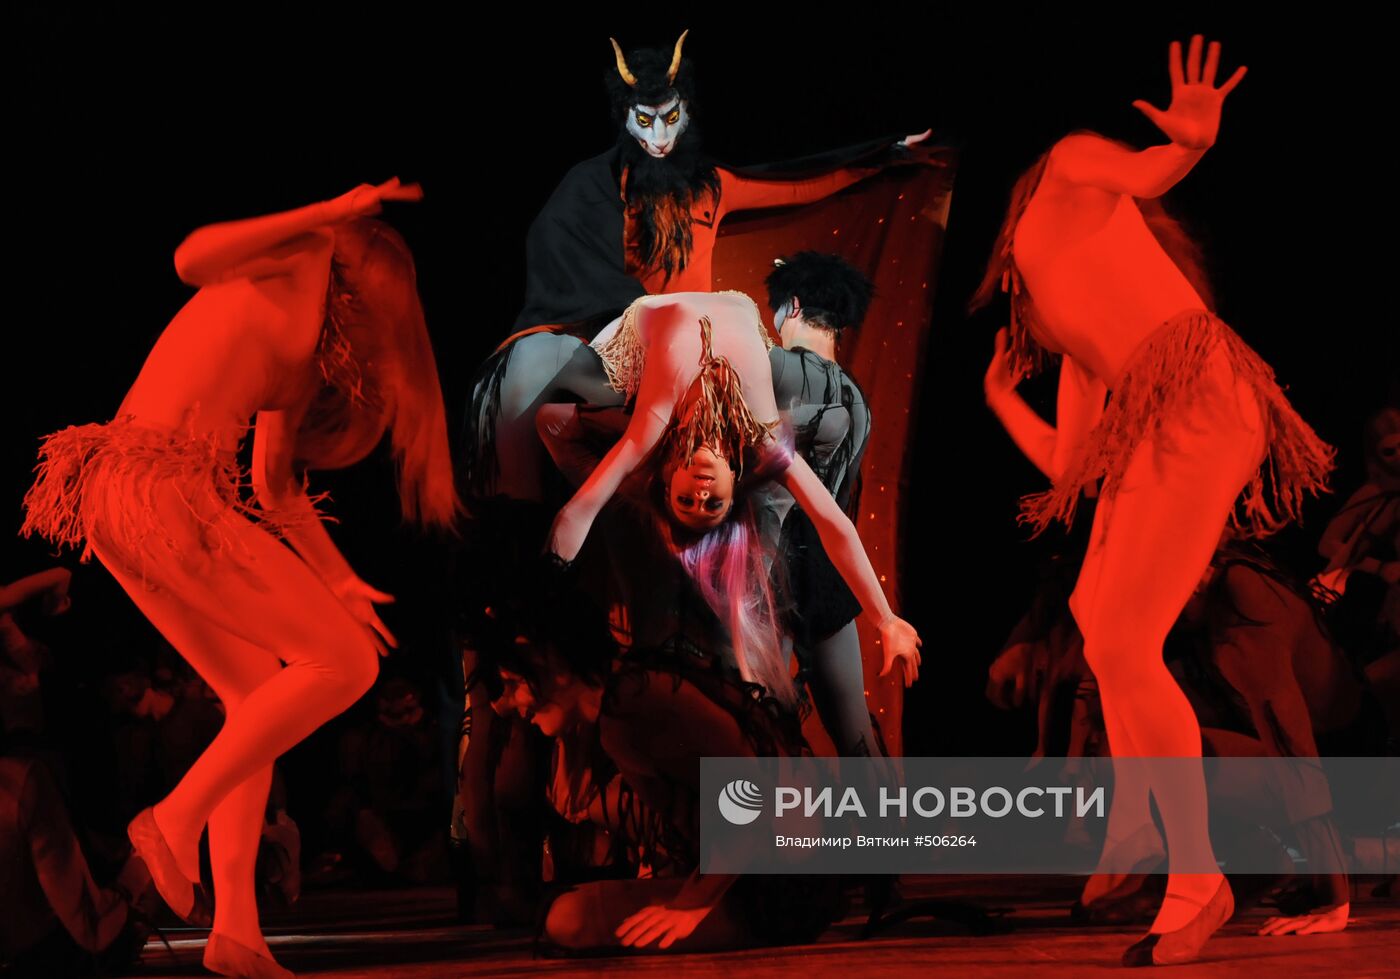 Балет "Ночь на лысой горе" в исполнении ансамбля Игоря Моисеева